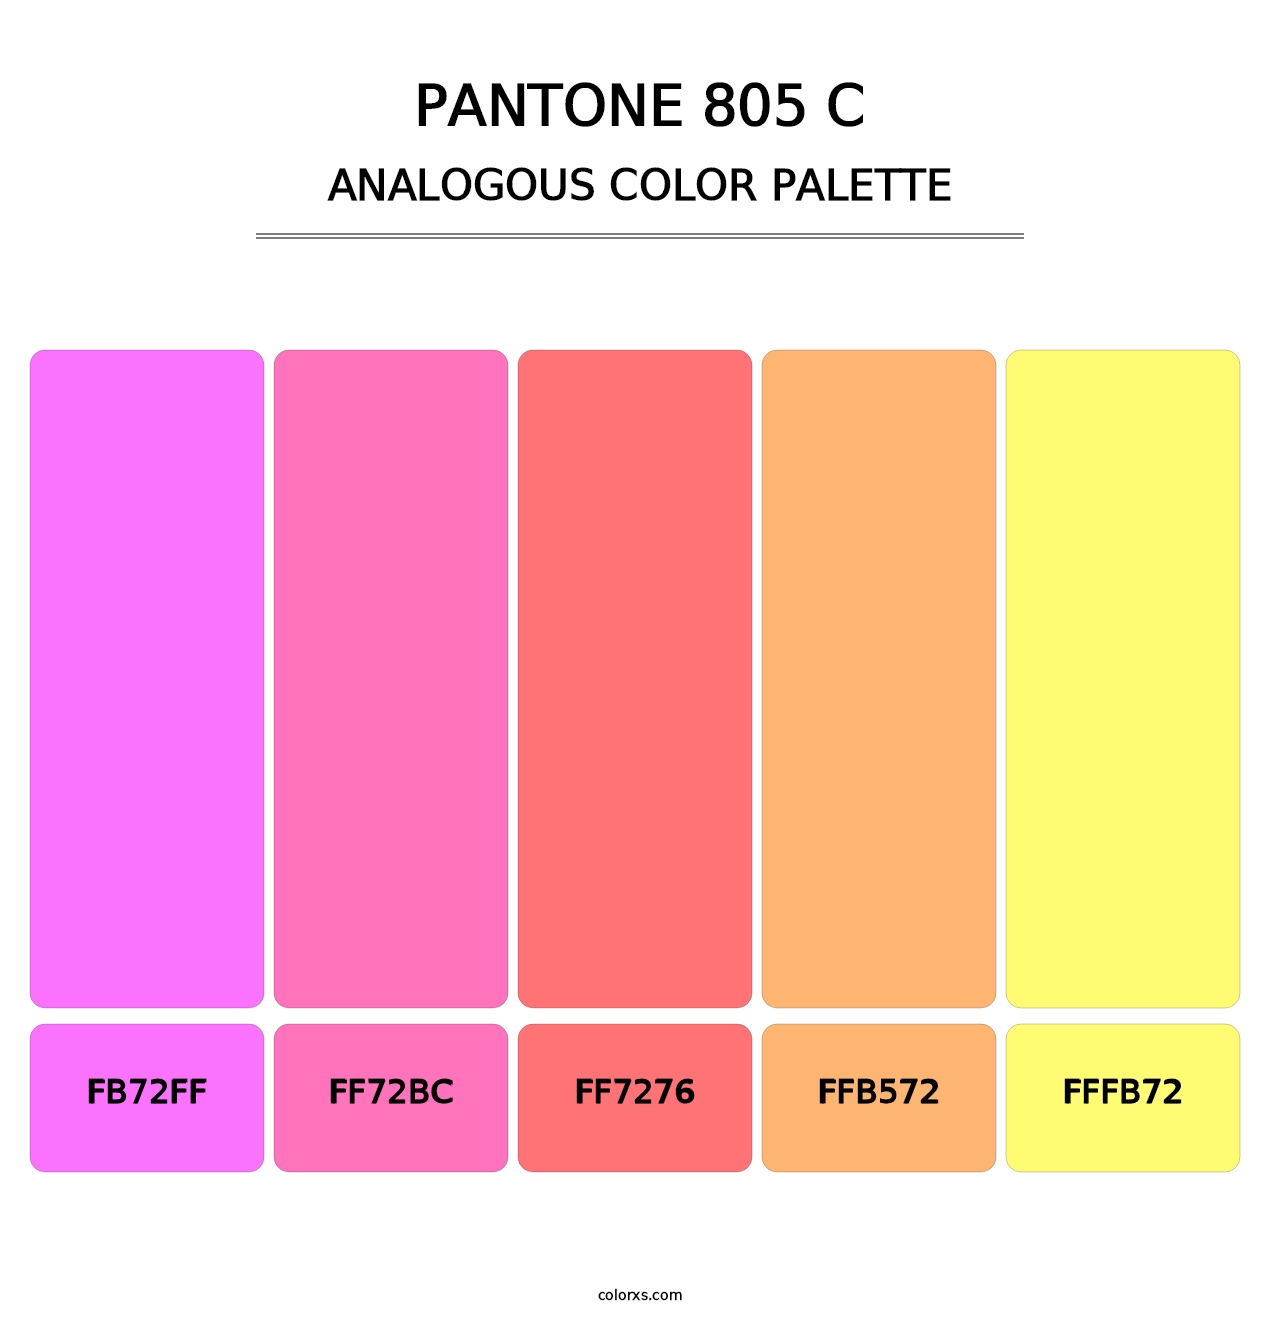 PANTONE 805 C - Analogous Color Palette